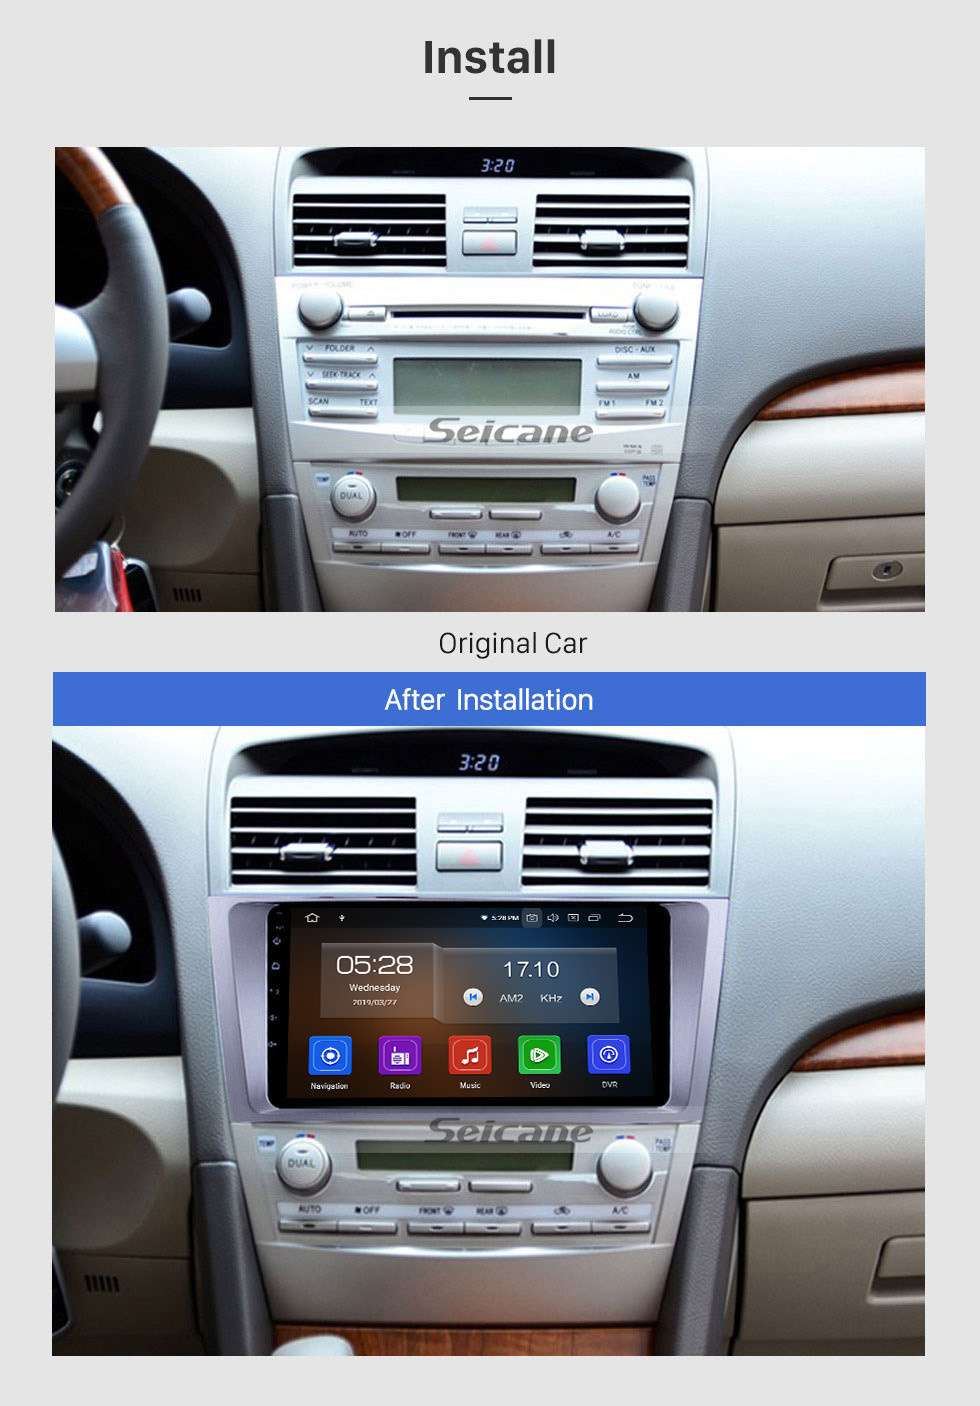 Seicane 2007-2011 Toyota CAMRY OEM 9 pulgadas Android 11.0 Radio con sistema de navegación GPS Pantalla táctil capacitiva Reproductor multimedia Soporte 3G WiFi Bluetooth TPMS DVR OBD II AUX Reposacabezas Monitor Control Video Cámara trasera USB SD